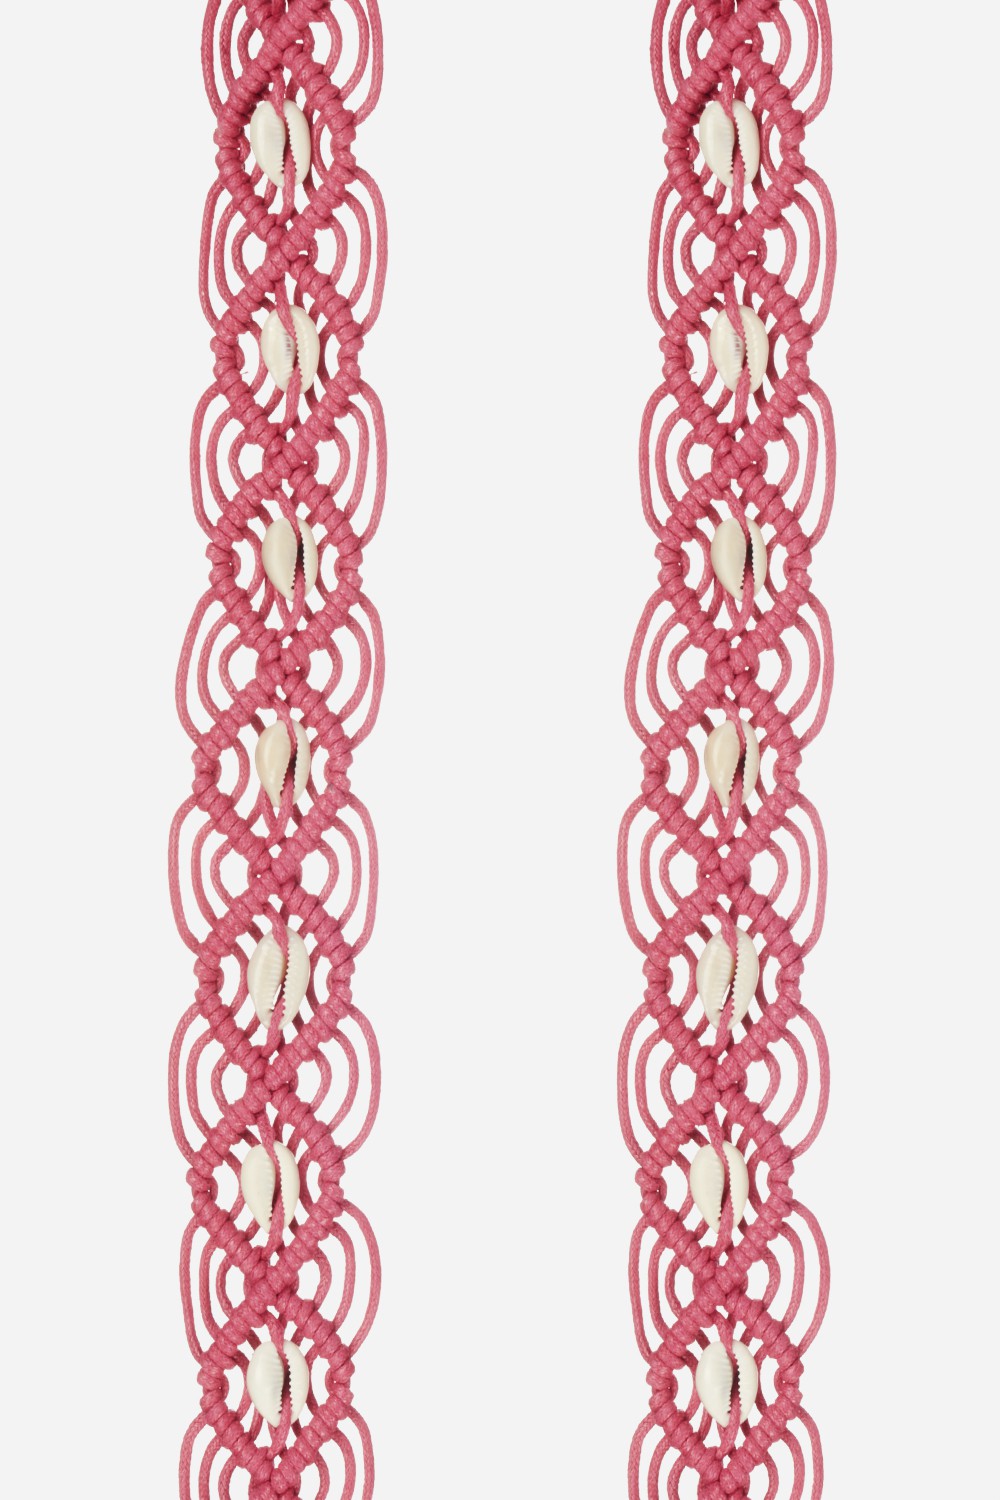 Eve Fuchsia Long Chain 120 cm